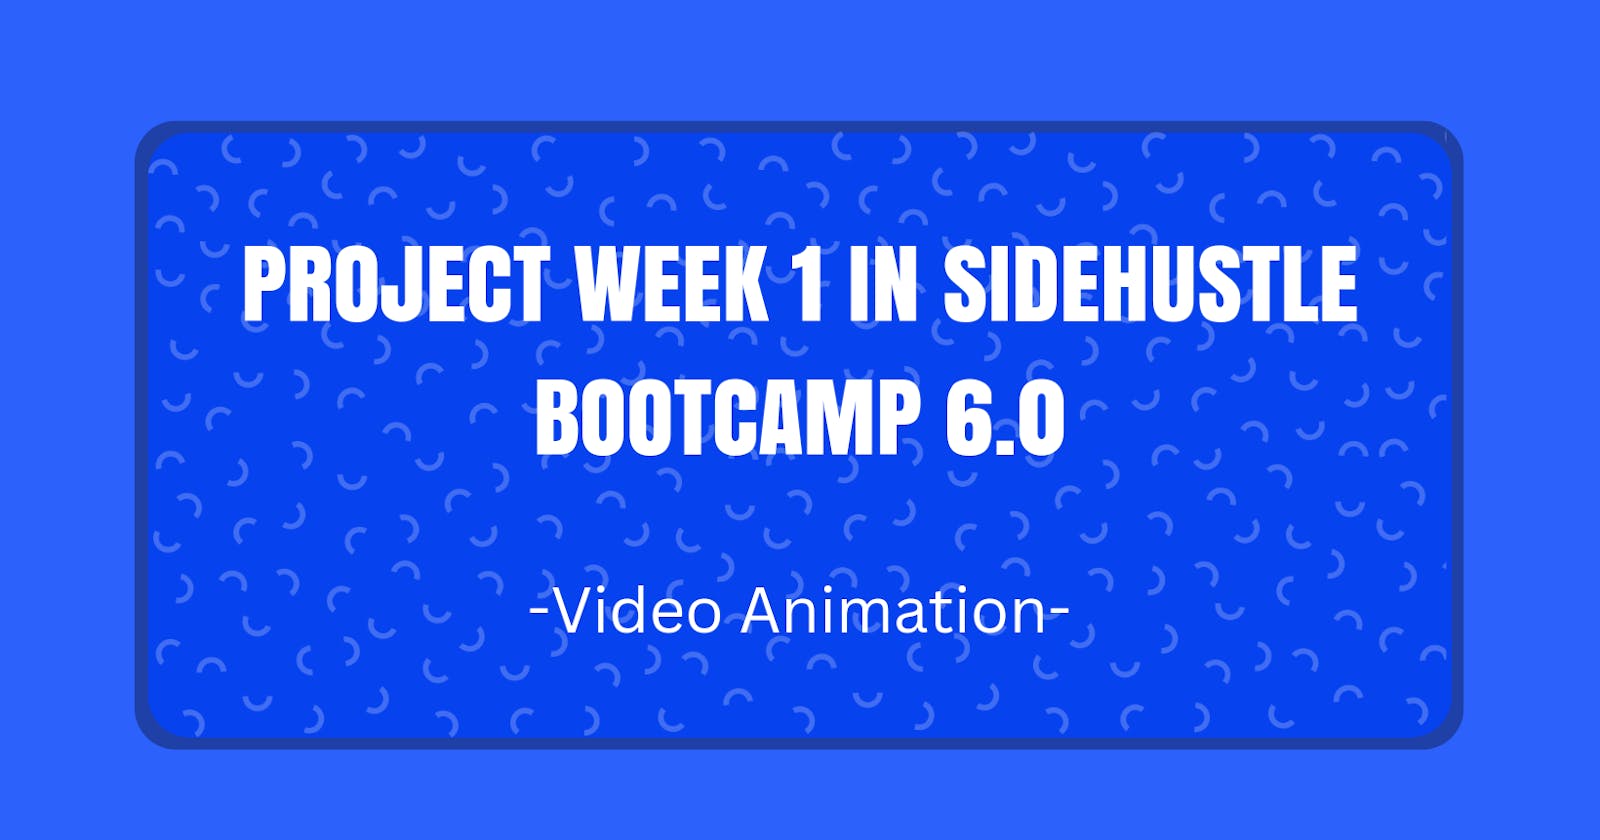 Project Week 1 In Sidehustle Bootcamp 6.0